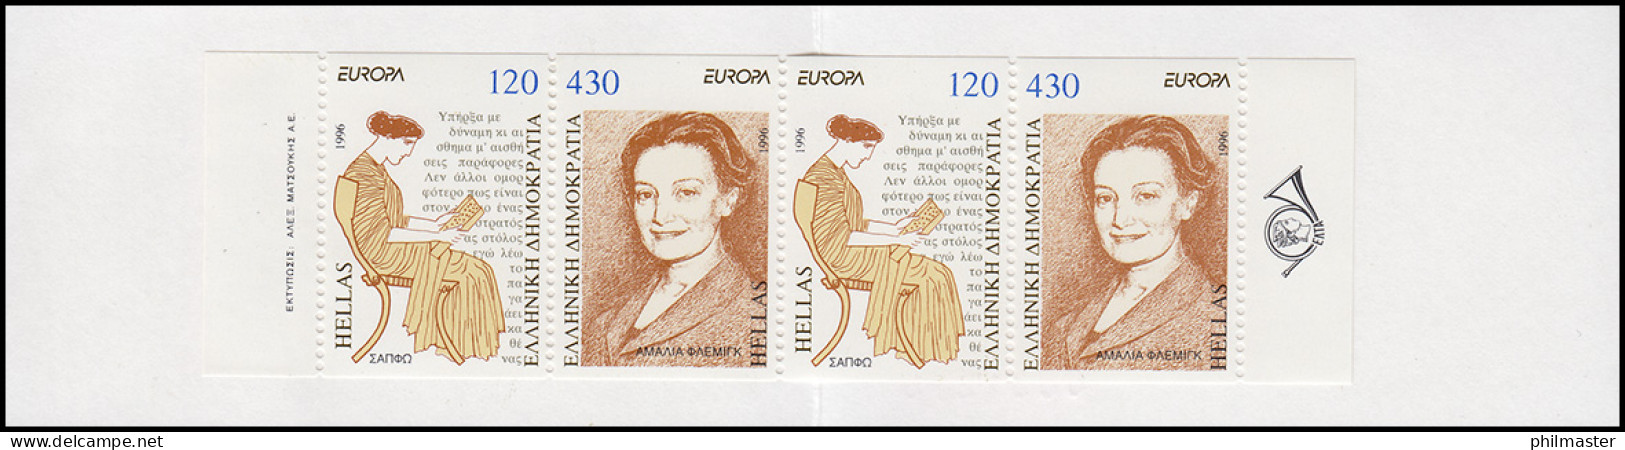 Griechenland Markenheftchen 19 Europa 1996, Postfrisch ** / MNH - Booklets